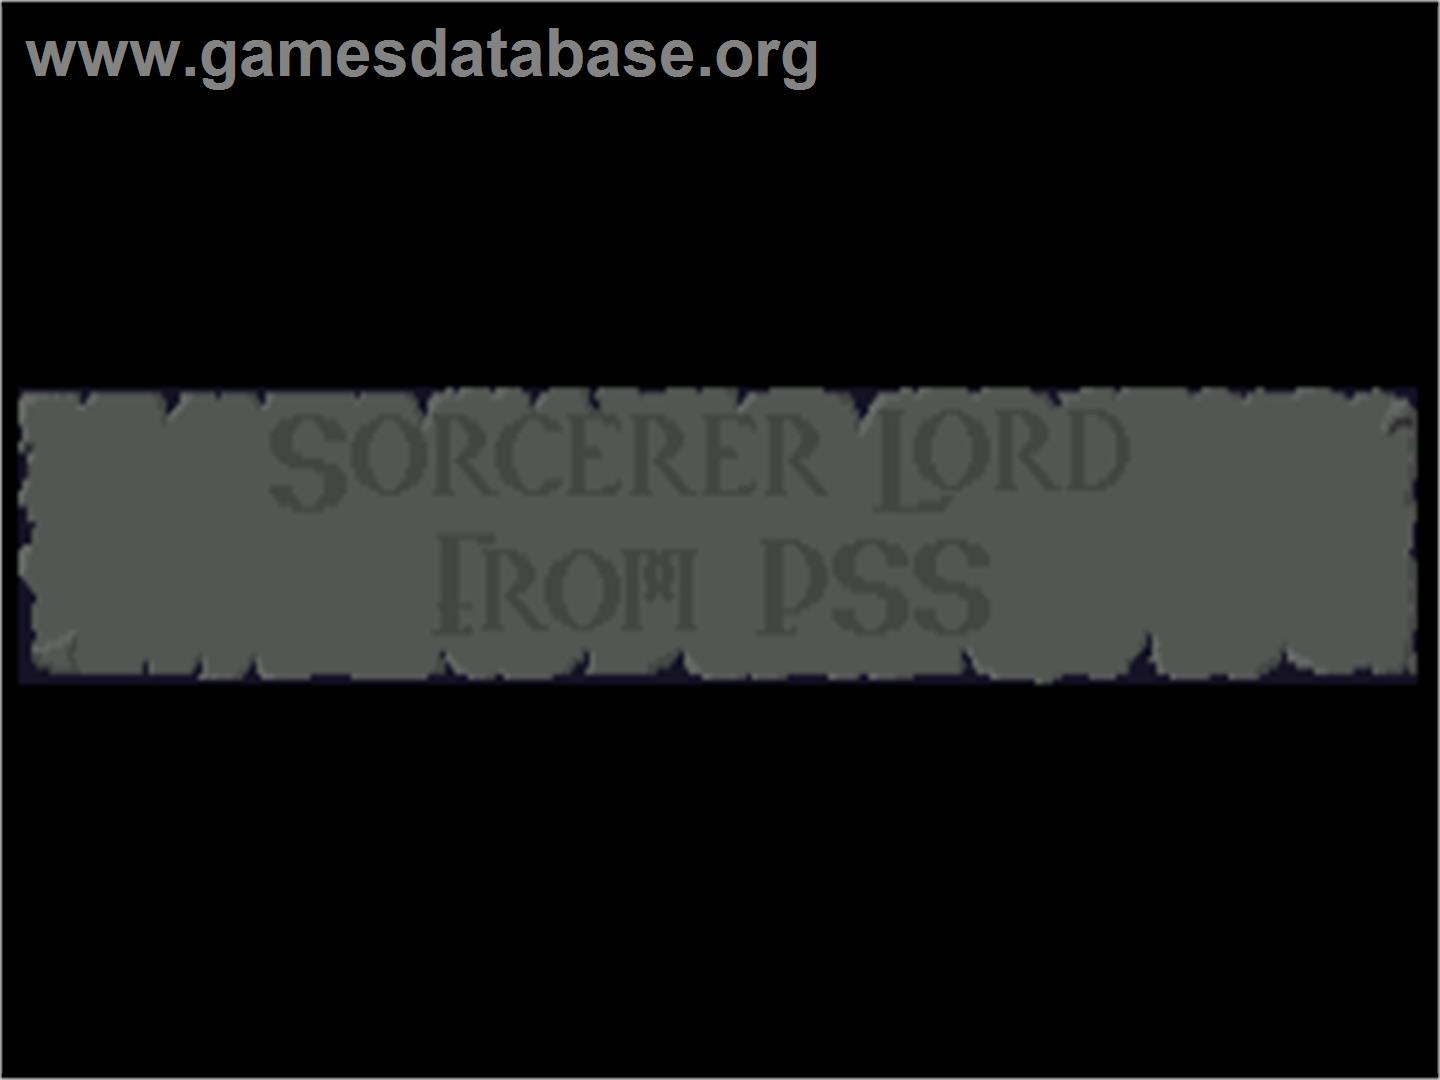 Sorcerer Lord - Commodore Amiga - Artwork - Title Screen